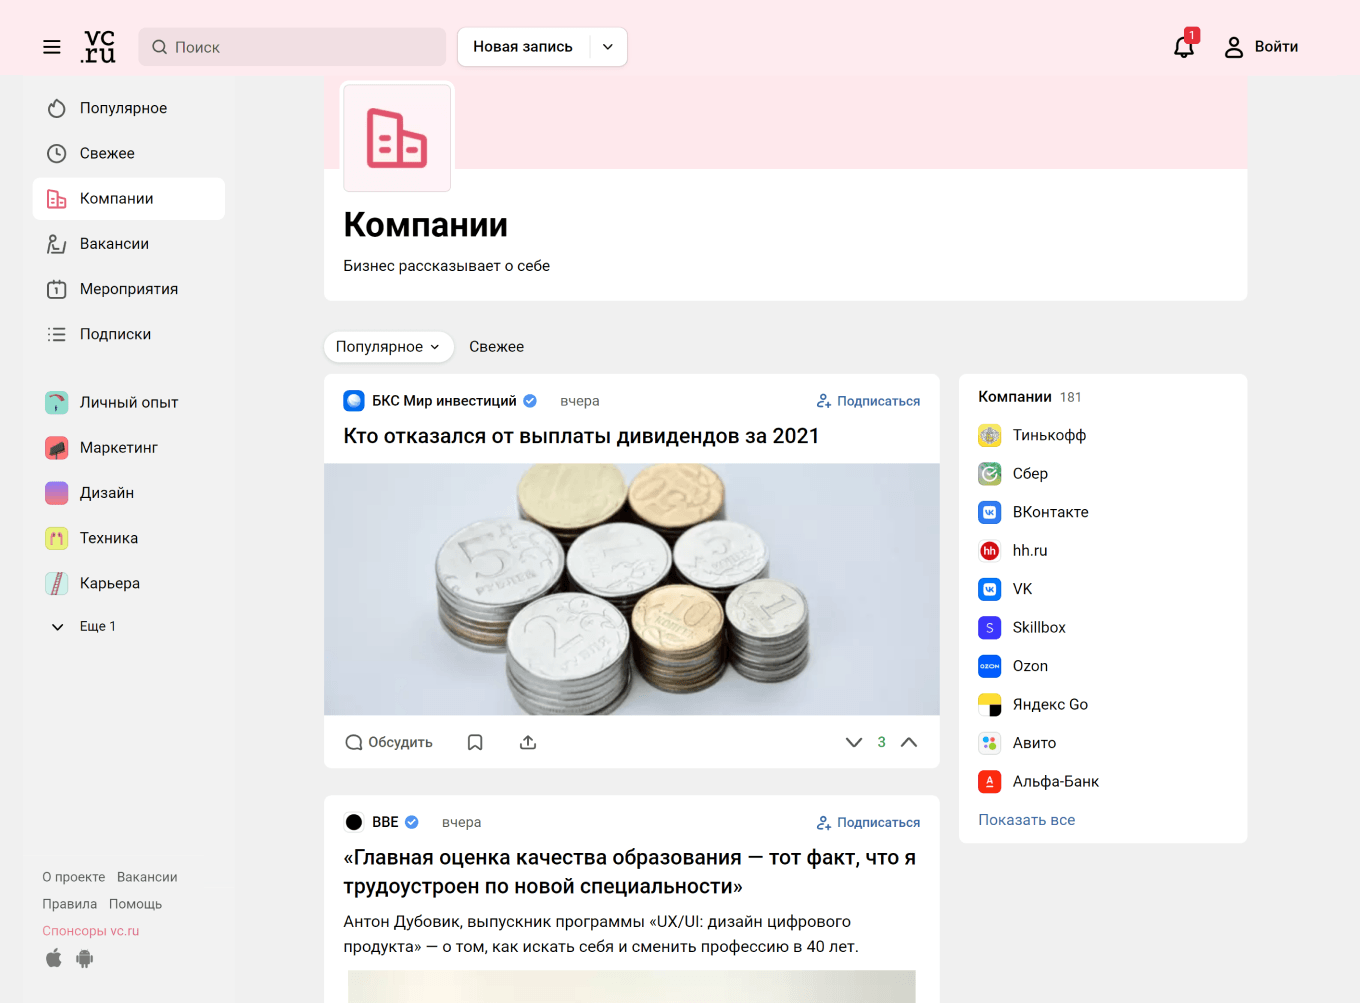 Как вести блог на VC.ru